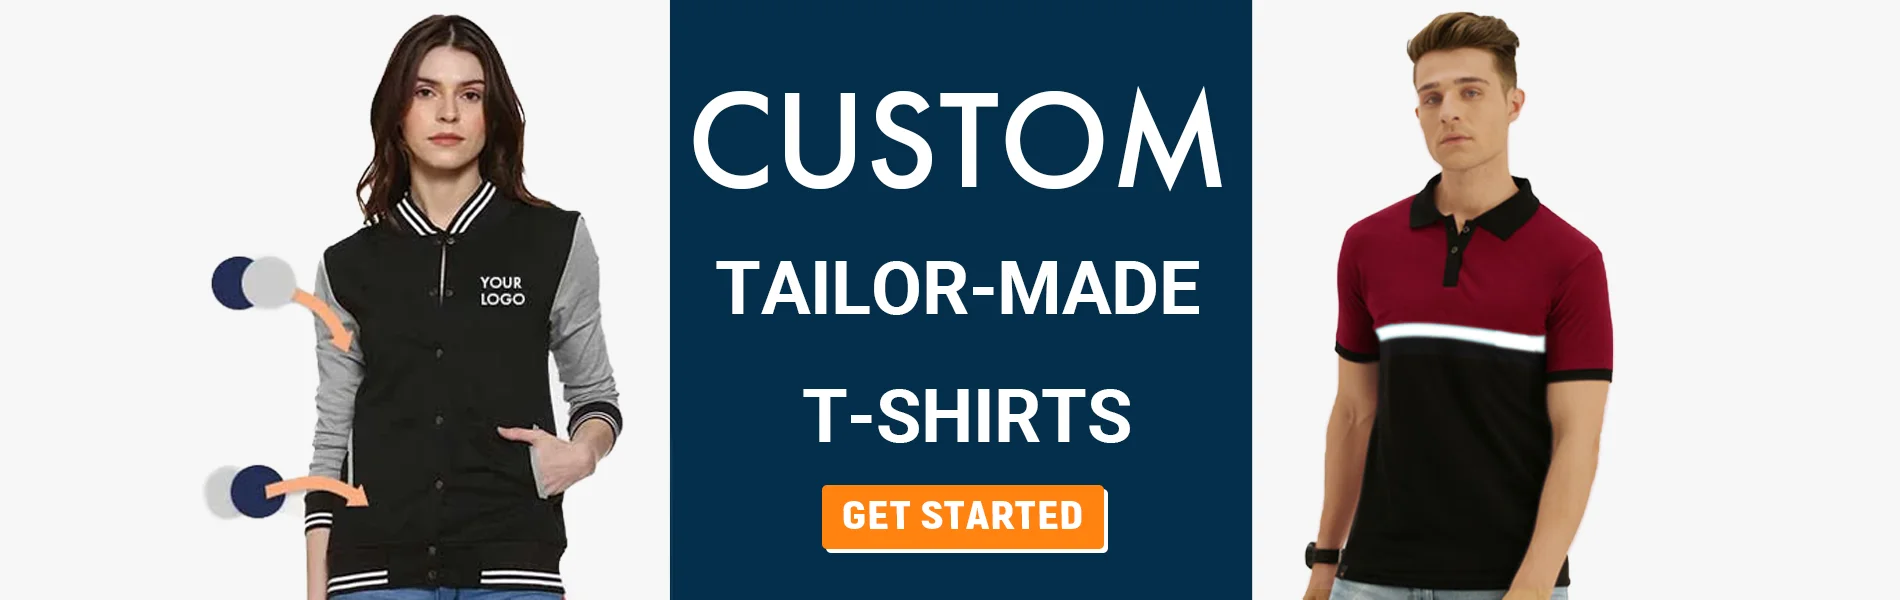 custom tailormade t-shirts jaipur